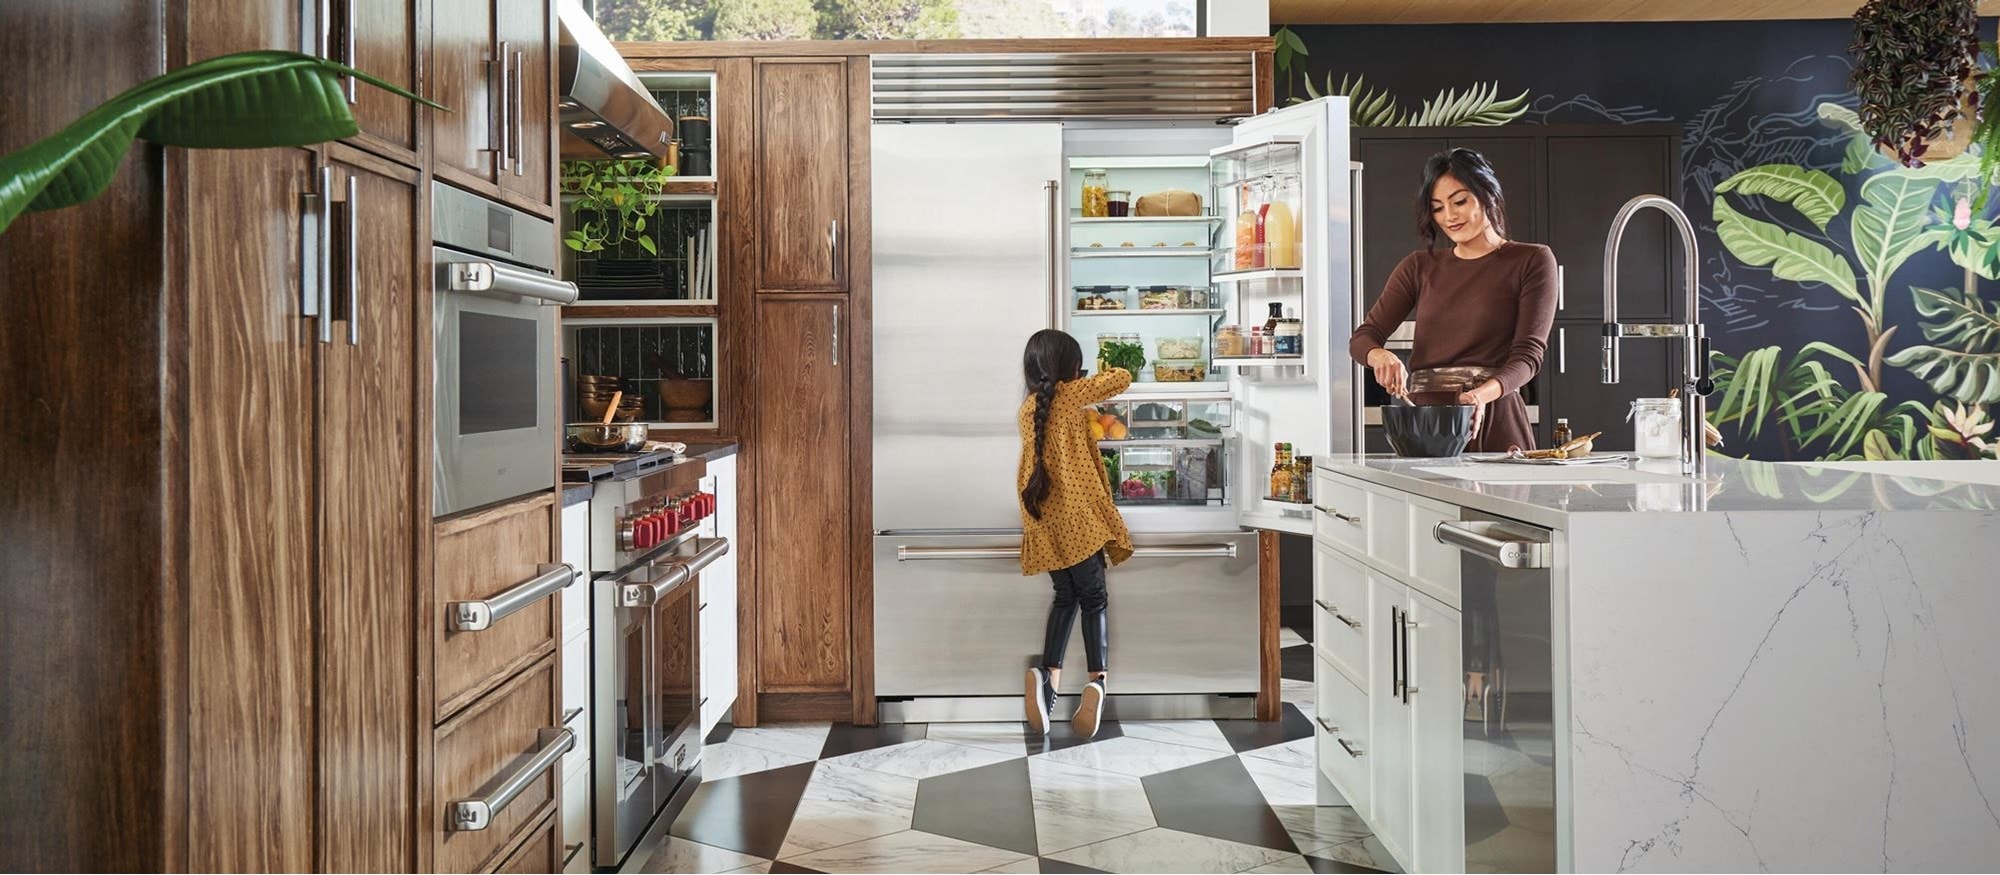 Large Mini fridge w/ freezer - appliances - by owner - sale - craigslist